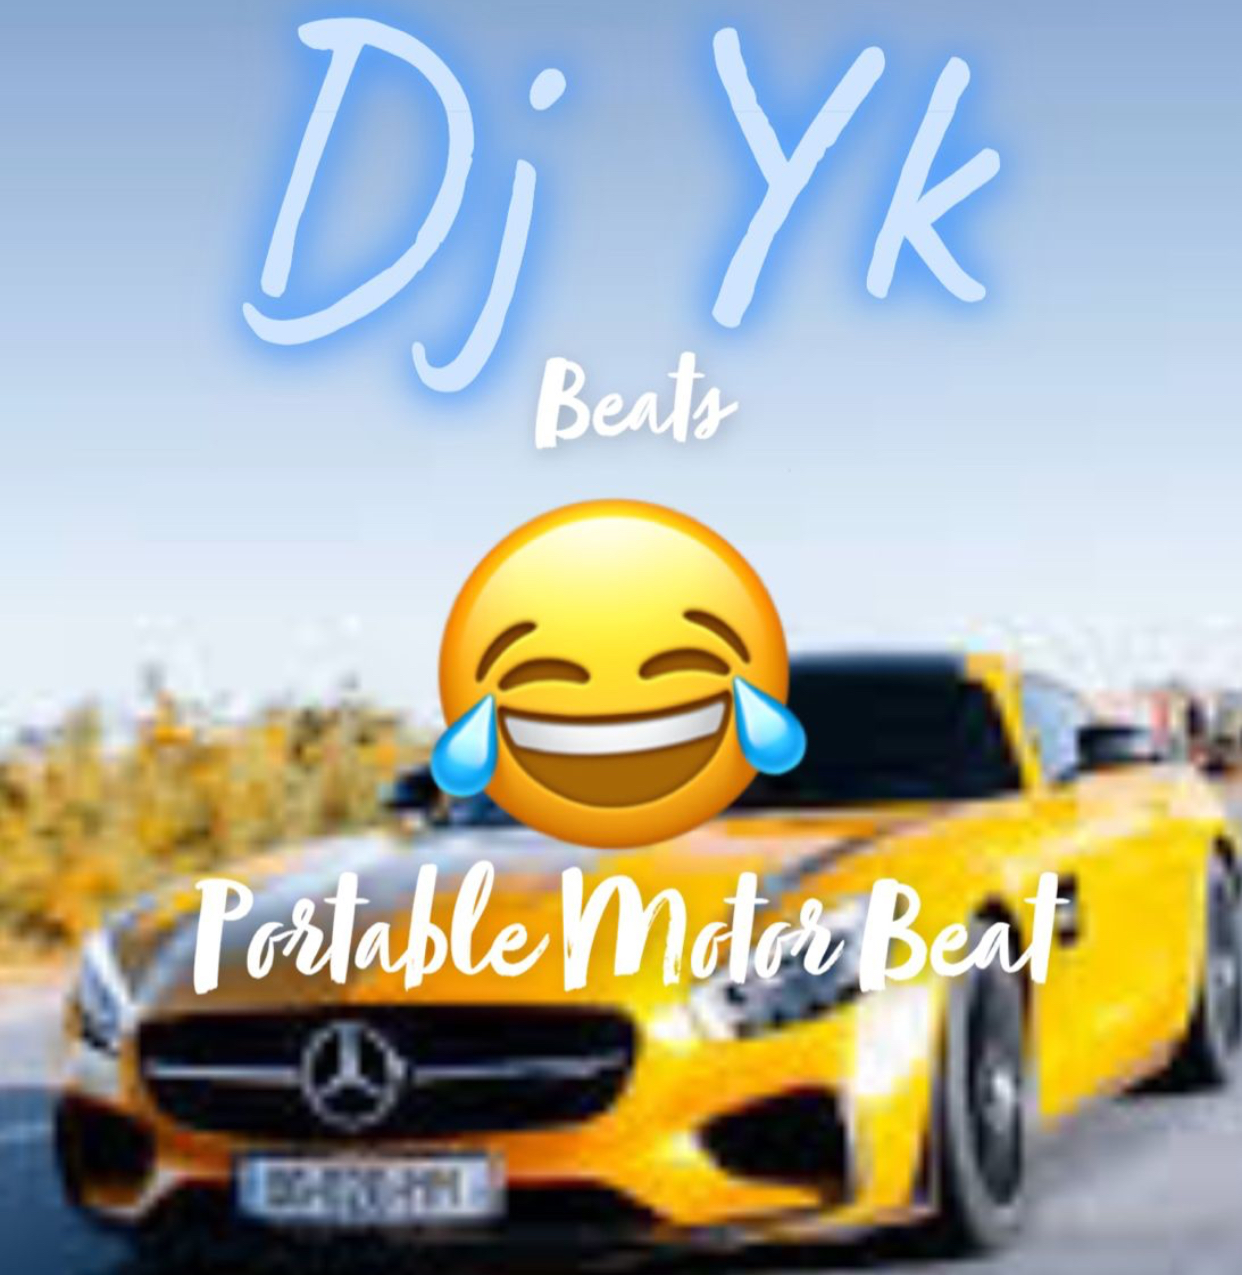 DJ YK Mule Beat - Motor Cruise Ft Portable